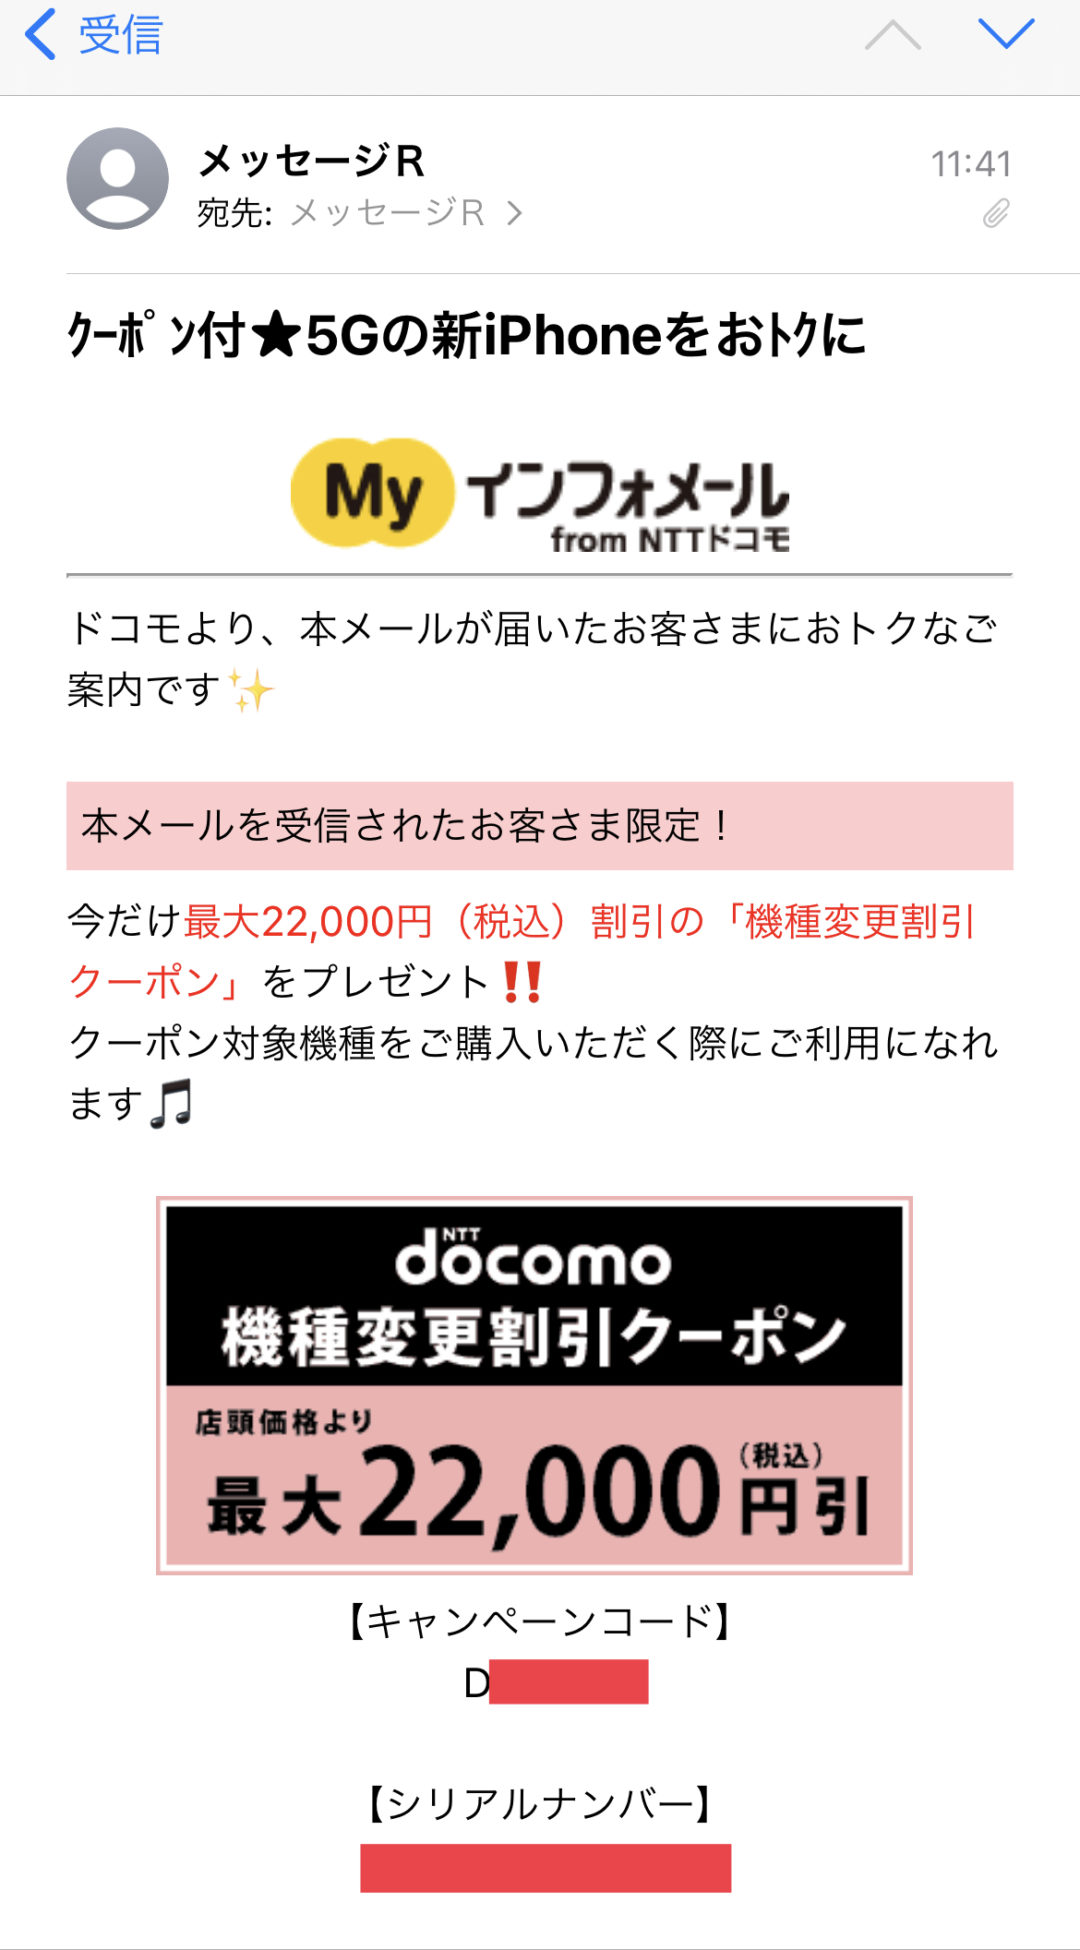 ドコモ DOCOMO クーポン 22000円相当 スペシャル サンクス - 優待券/割引券